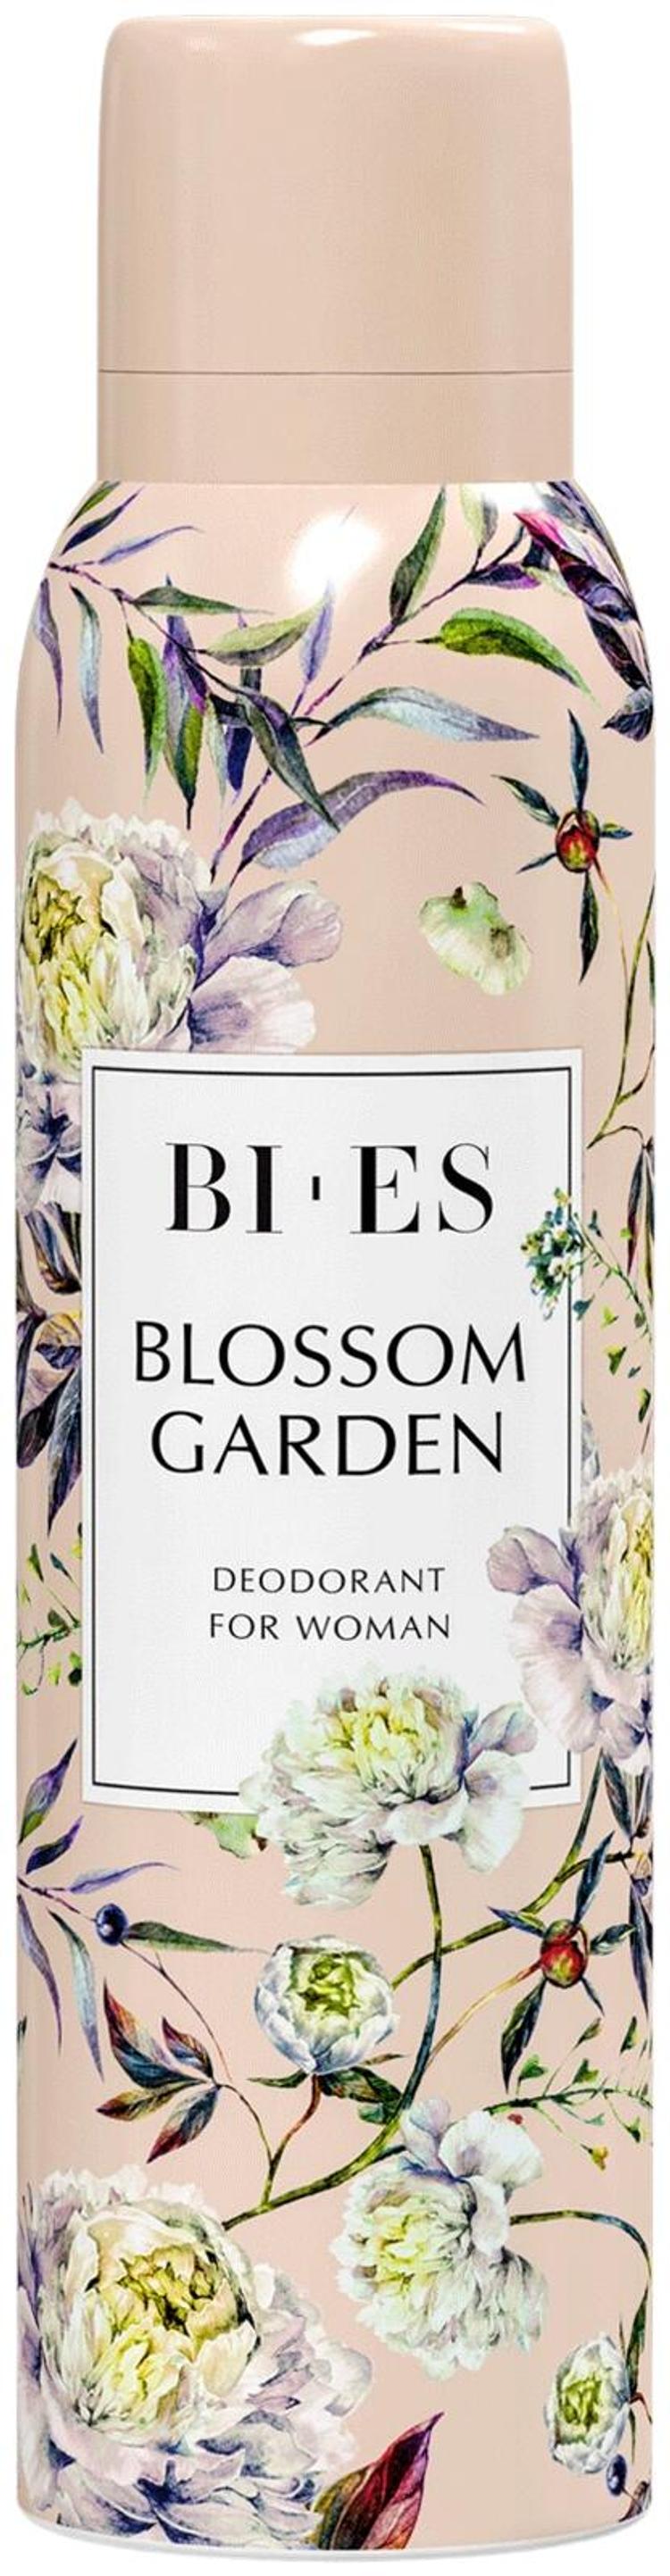 BI-ES Blossom Garden Deodorant for Woman 150ml